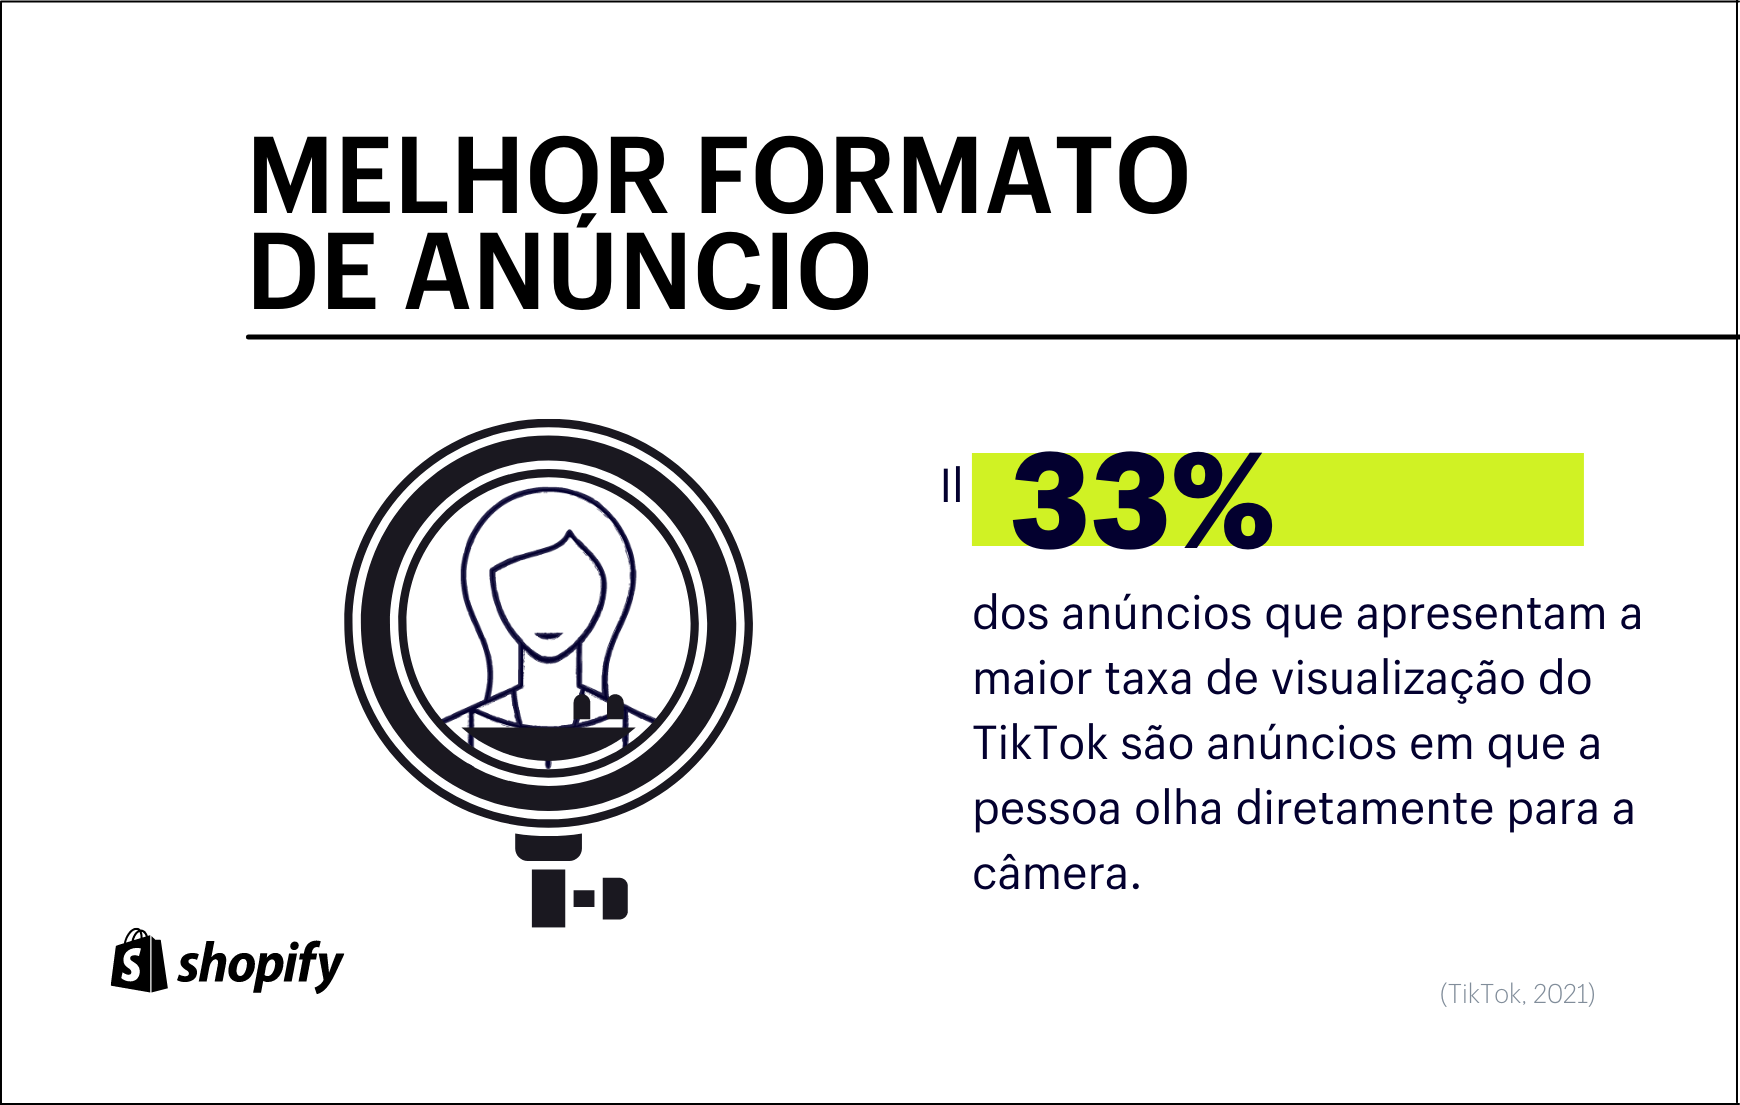 Infográfico com fundo branco. No primeiro plano, em verde e preto, há a informação de que 33% dos anúncios com maior taxa de visualização do TikTok são aqueles em que a pessoa olha diretamente para a câmera.